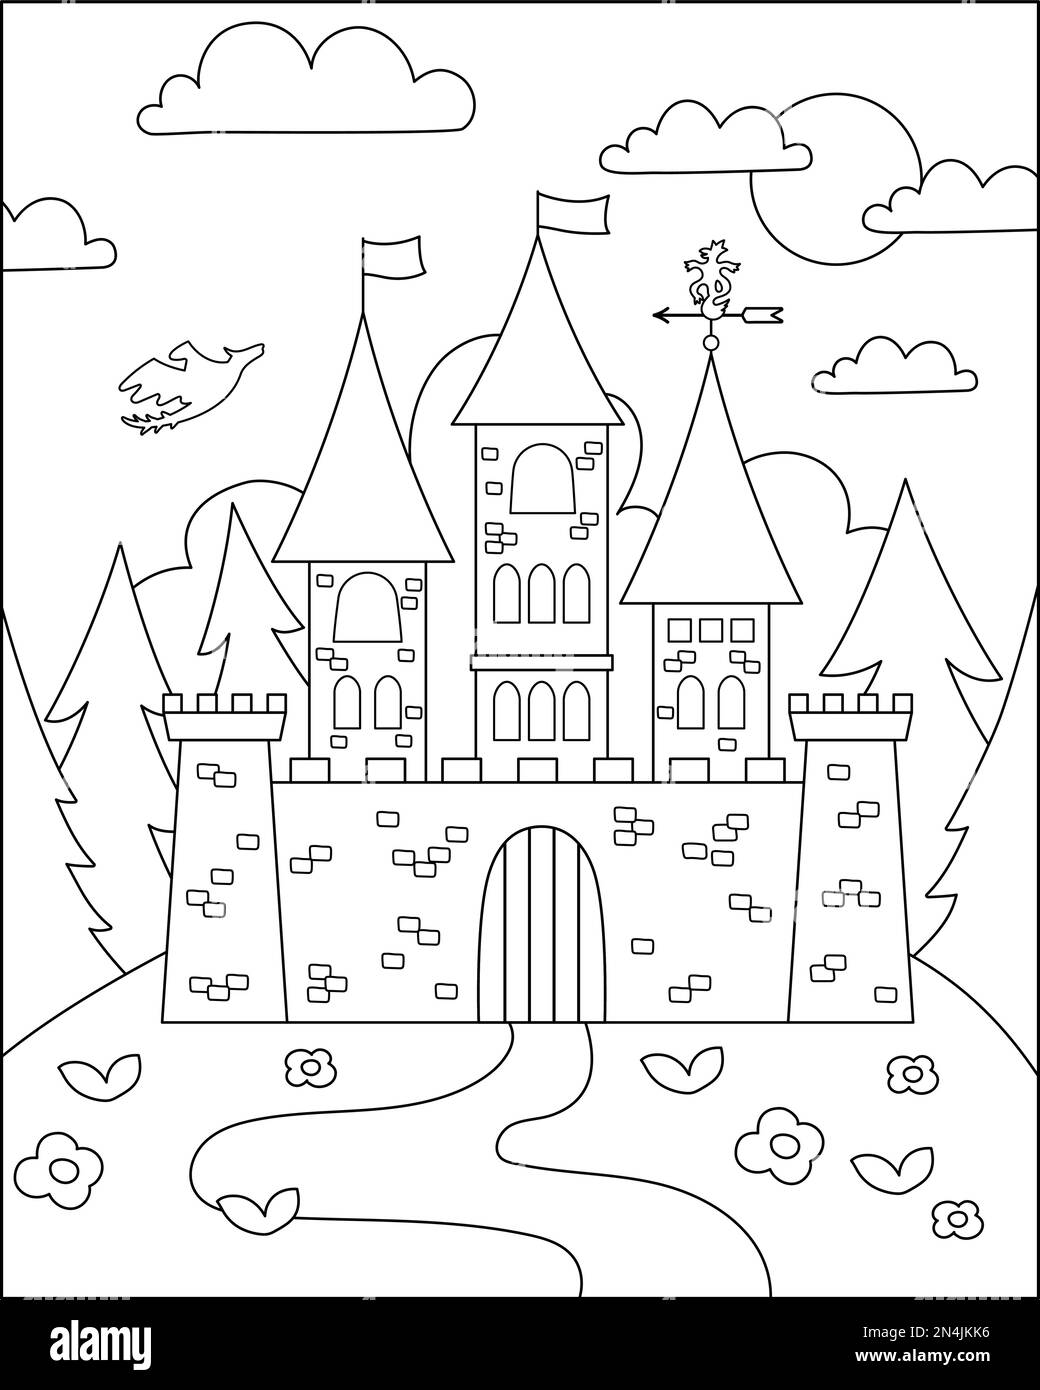 Vector schwarz-weiße Märchenlandschaft mit Burg auf einem Hügel. Märchenhintergrund. Malseite für das magische Königreich. Landschaftsbild mit Mediev Stock Vektor